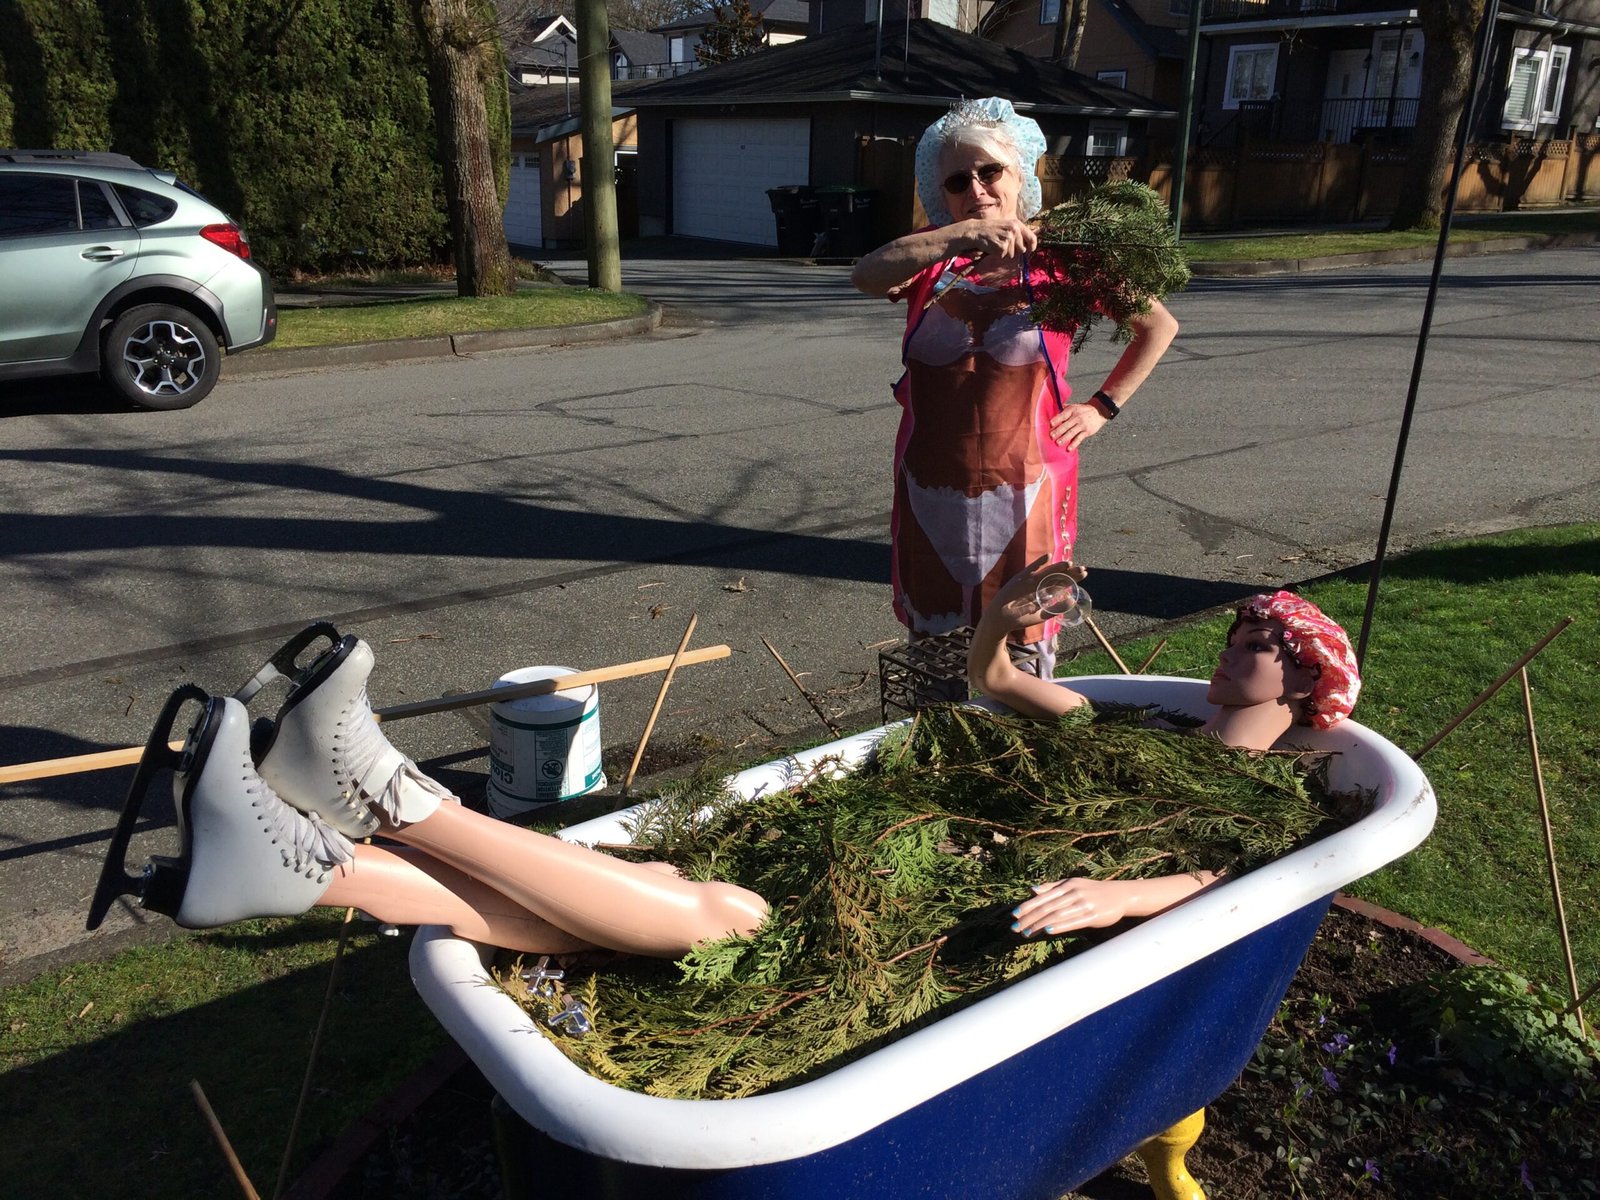 Schurman celebrates "forest bathing" by posing with a bath tub.